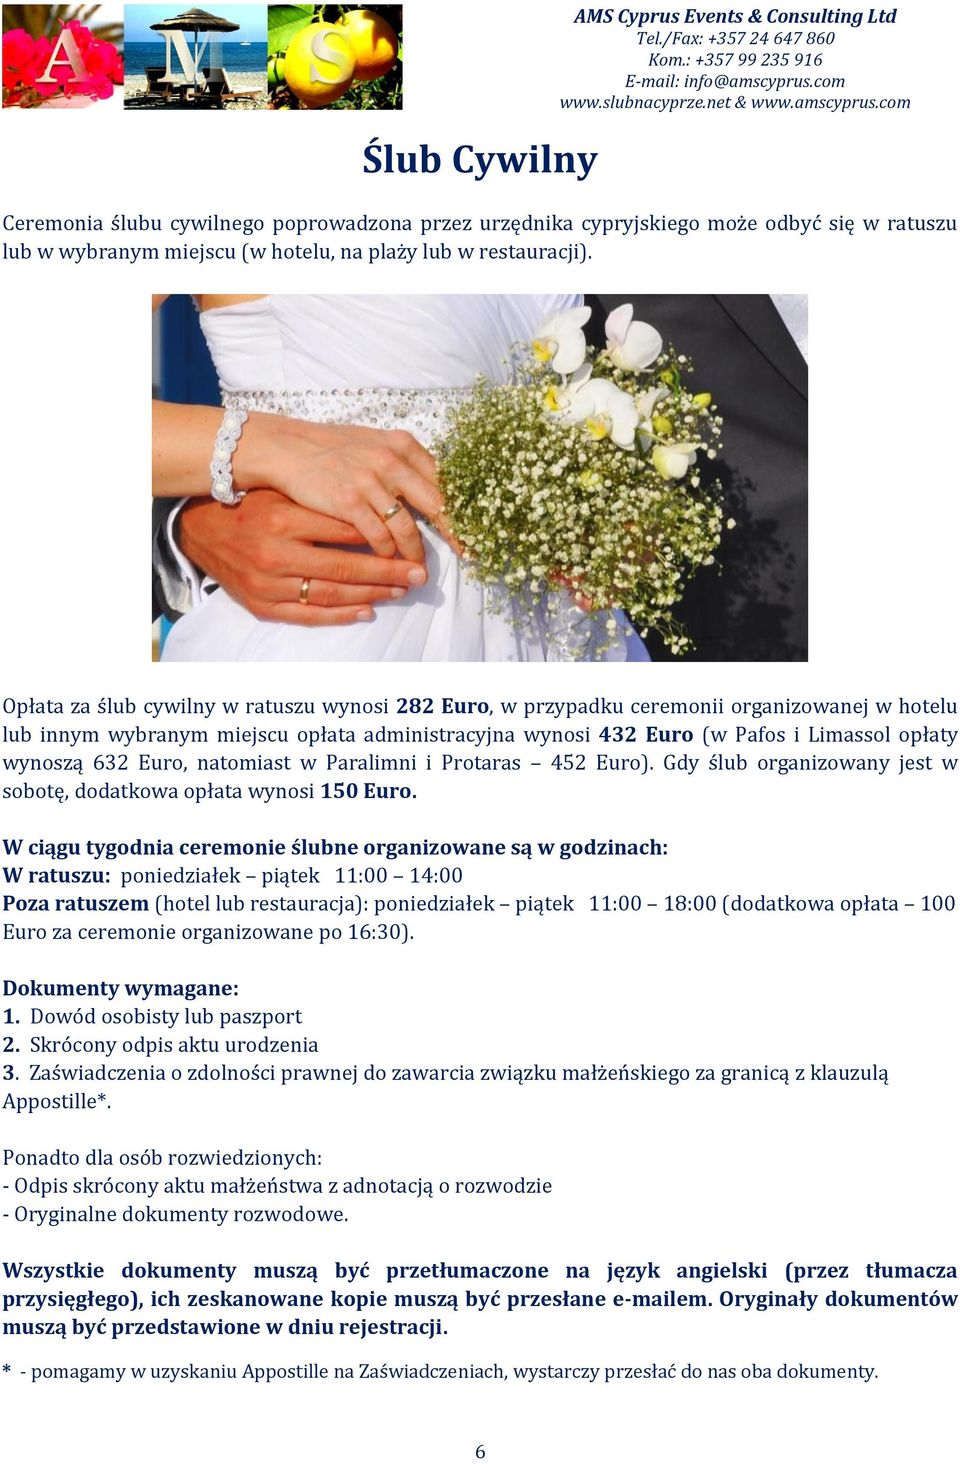 Opłata za ślub cywilny w ratuszu wynosi 282 Euro, w przypadku ceremonii organizowanej w hotelu lub innym wybranym miejscu opłata administracyjna wynosi 432 Euro (w Pafos i Limassol opłaty wynoszą 632